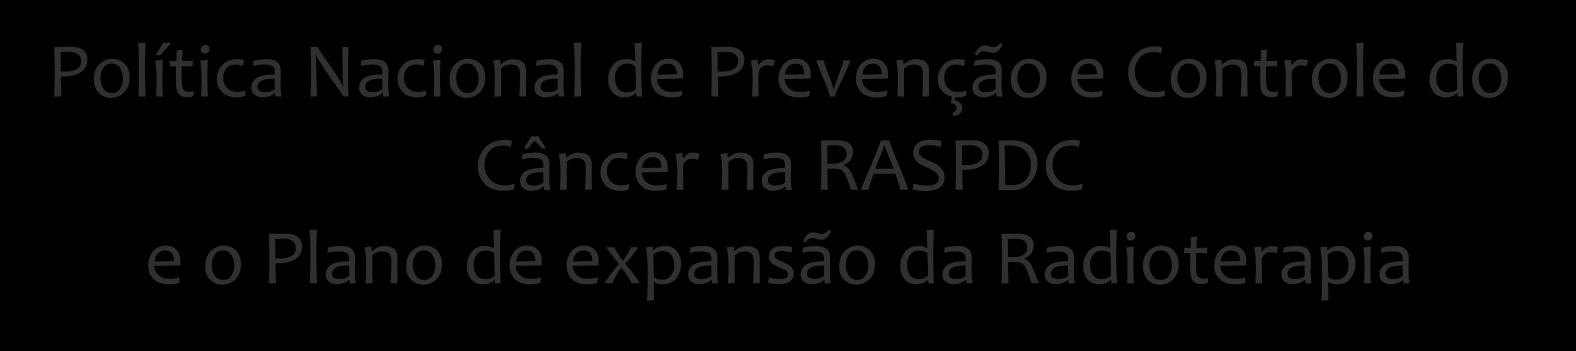 Política Nacional de Prevenção e Controle do Câncer na RASPDC e o Plano de expansão da Radioterapia Workshop para soluções em